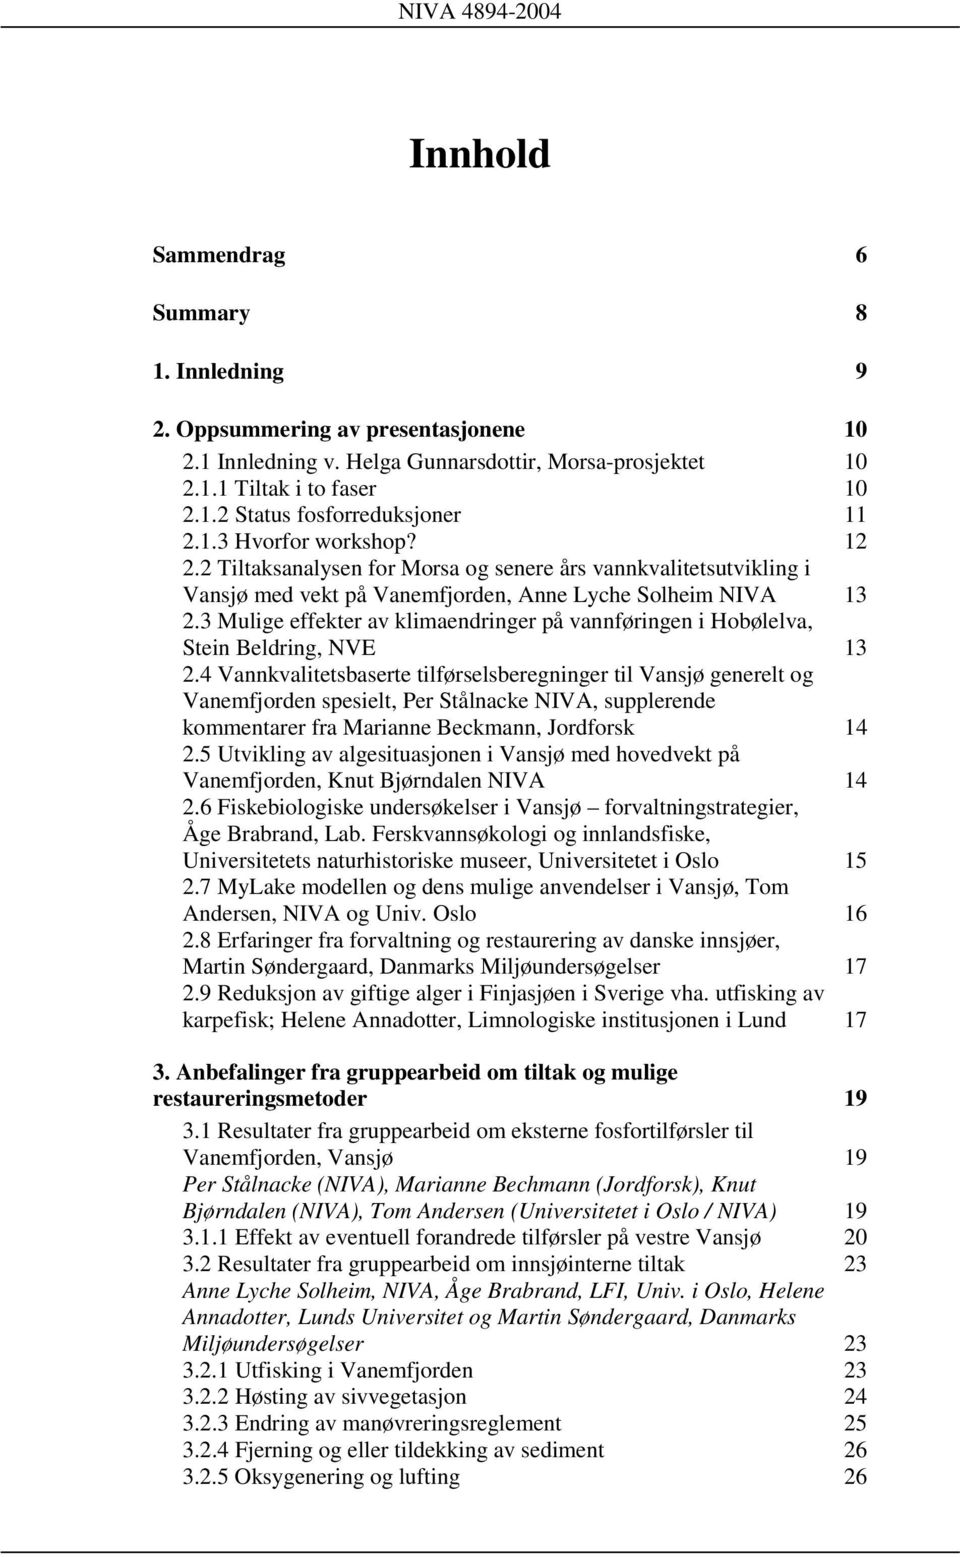 3 Mulige effekter av klimaendringer på vannføringen i Hobølelva, Stein Beldring, NVE 13 2.